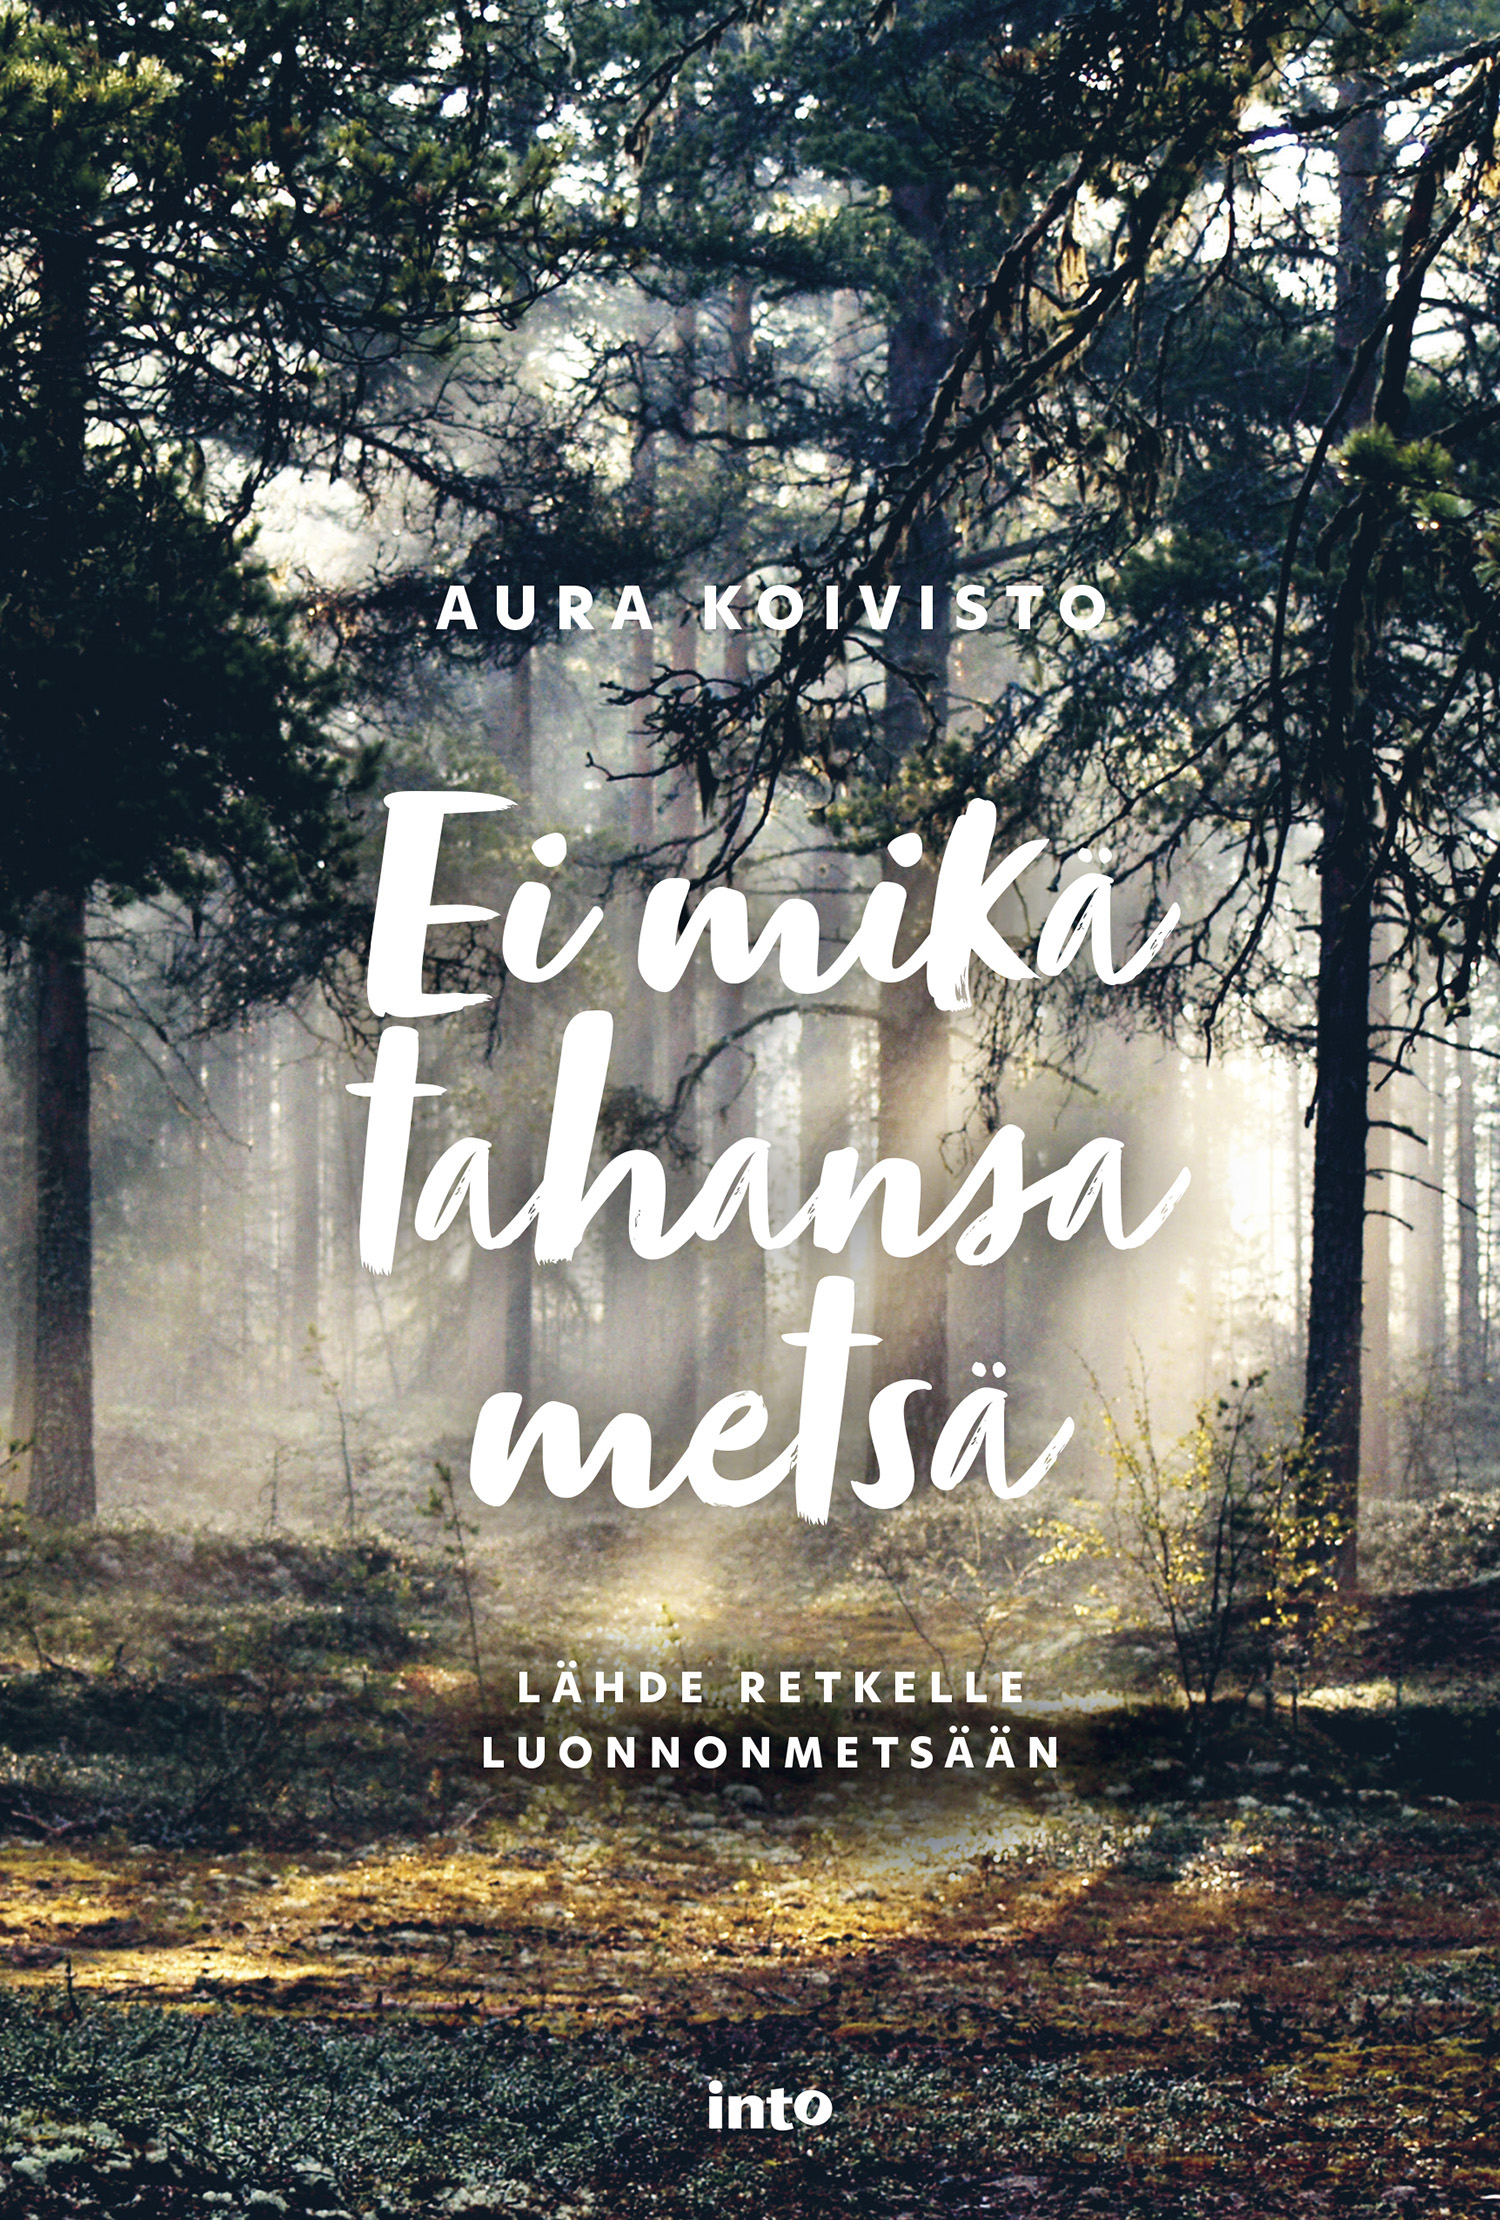 Koivisto, Aura - Ei mikä tahansa metsä: Lähde retkelle luonnonmetsään, ebook